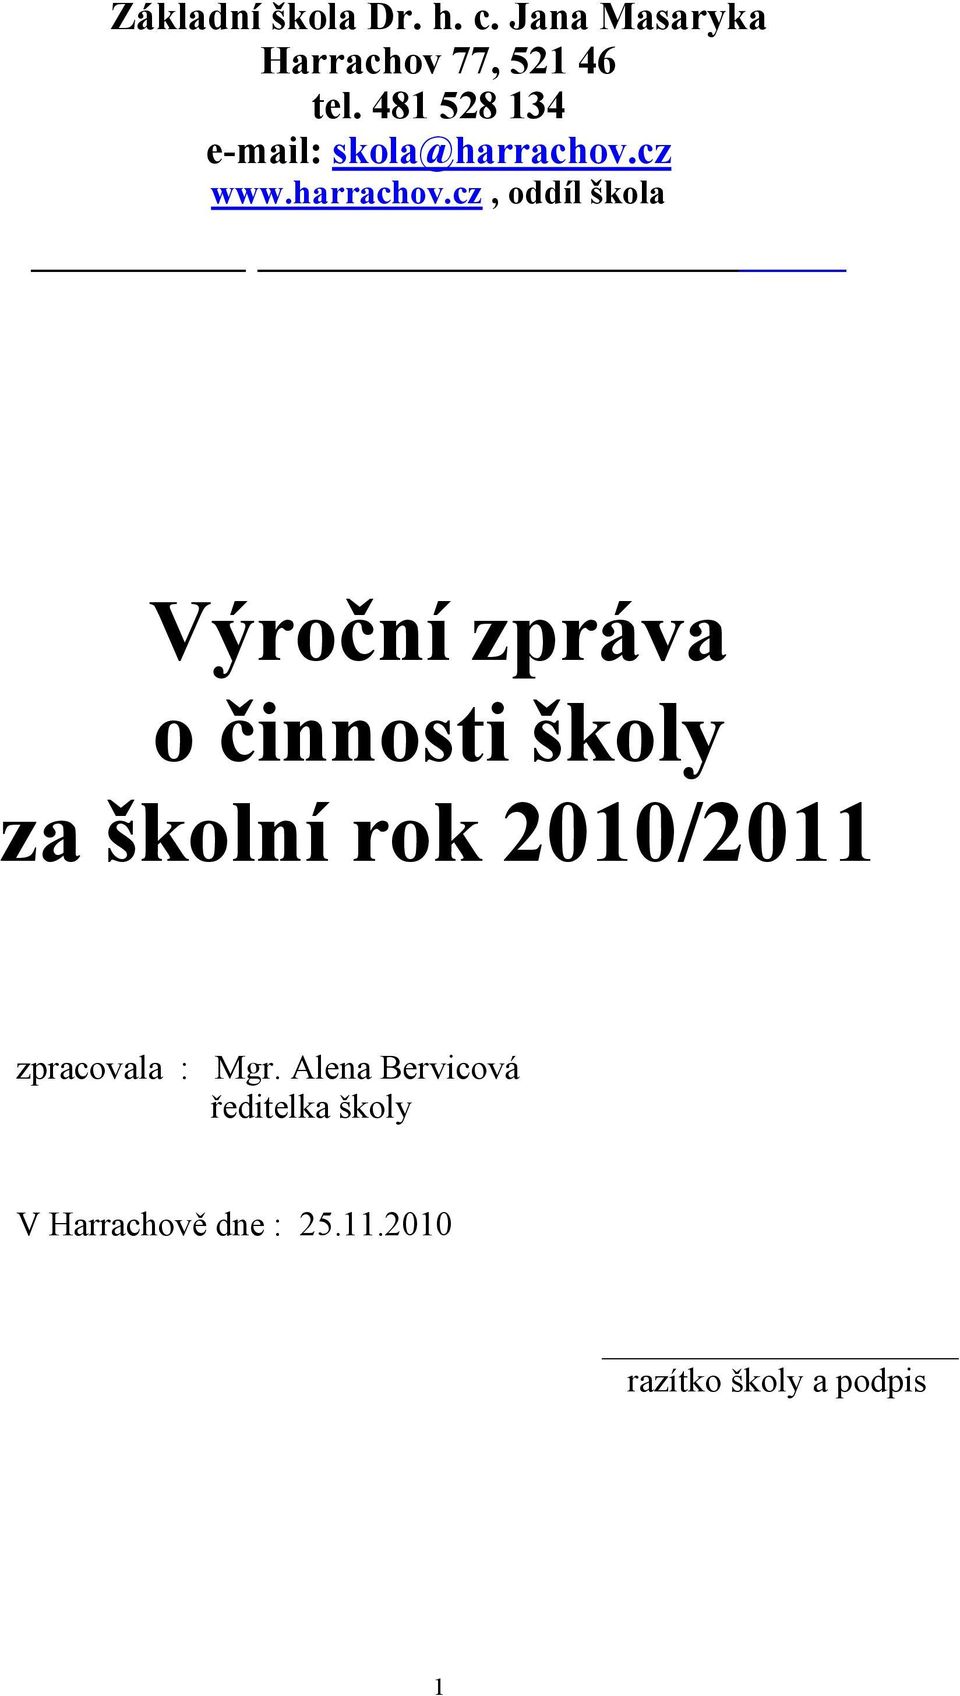 cz www.harrachov.